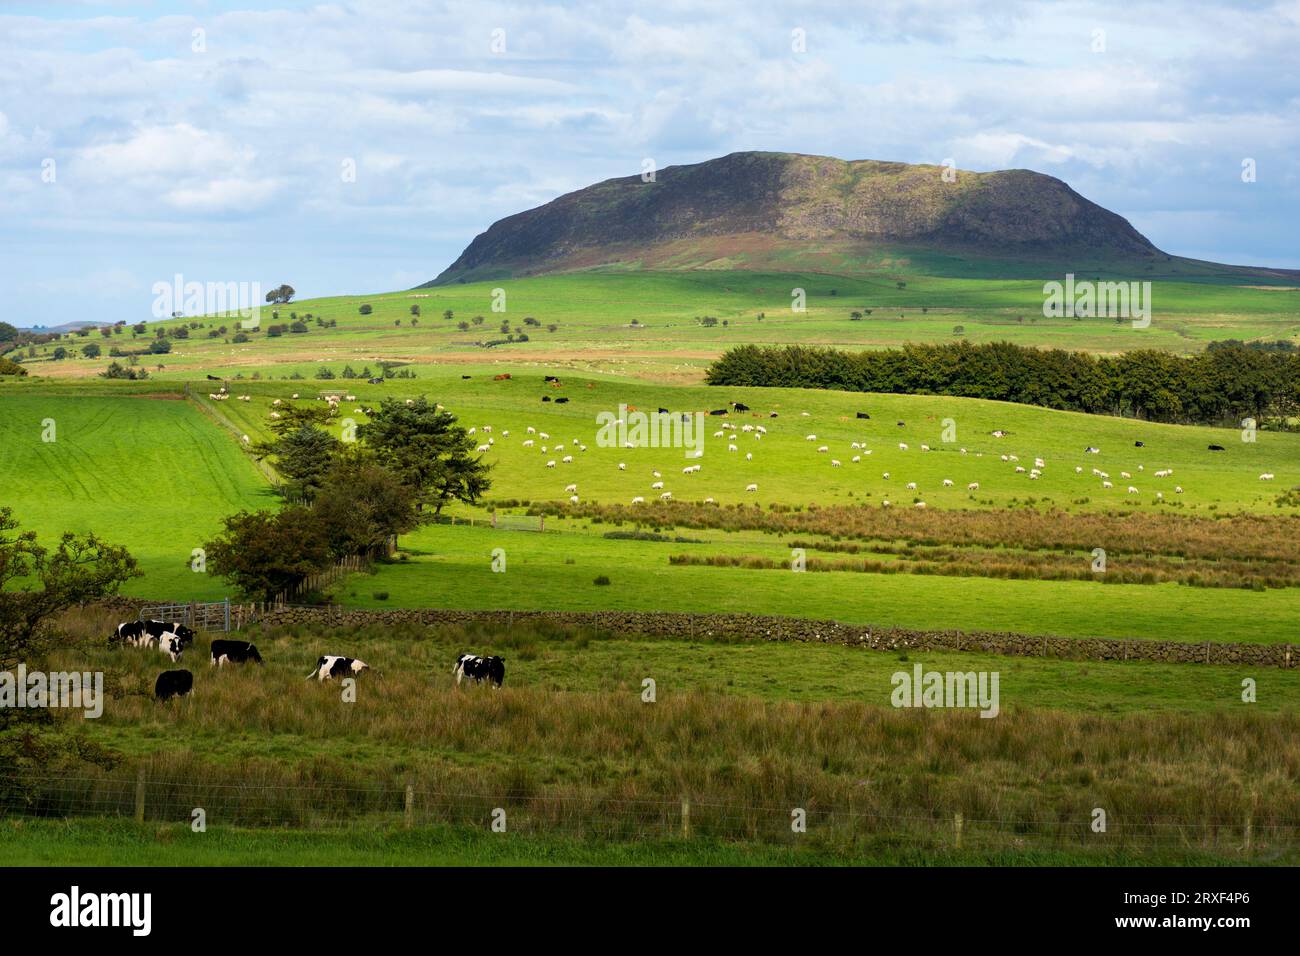 Slemish, historiquement appelé Slieve Mish, est une colline du comté d'Antrim, en Irlande du Nord. Il se trouve à quelques kilomètres à l'est de Ballymena. Banque D'Images